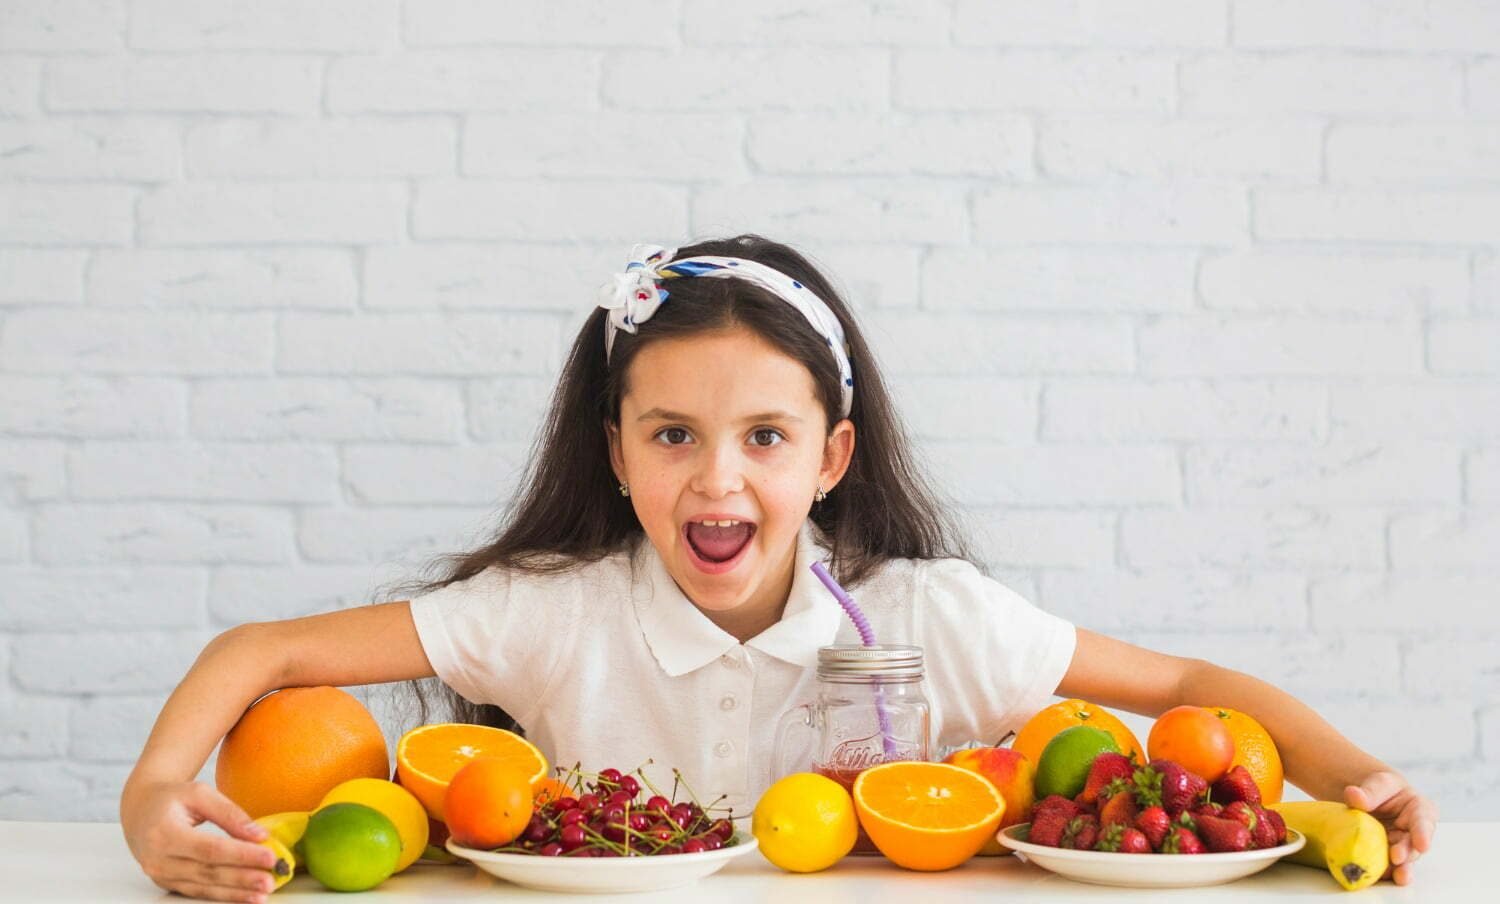 niña con muchas frutas sobre una mesa